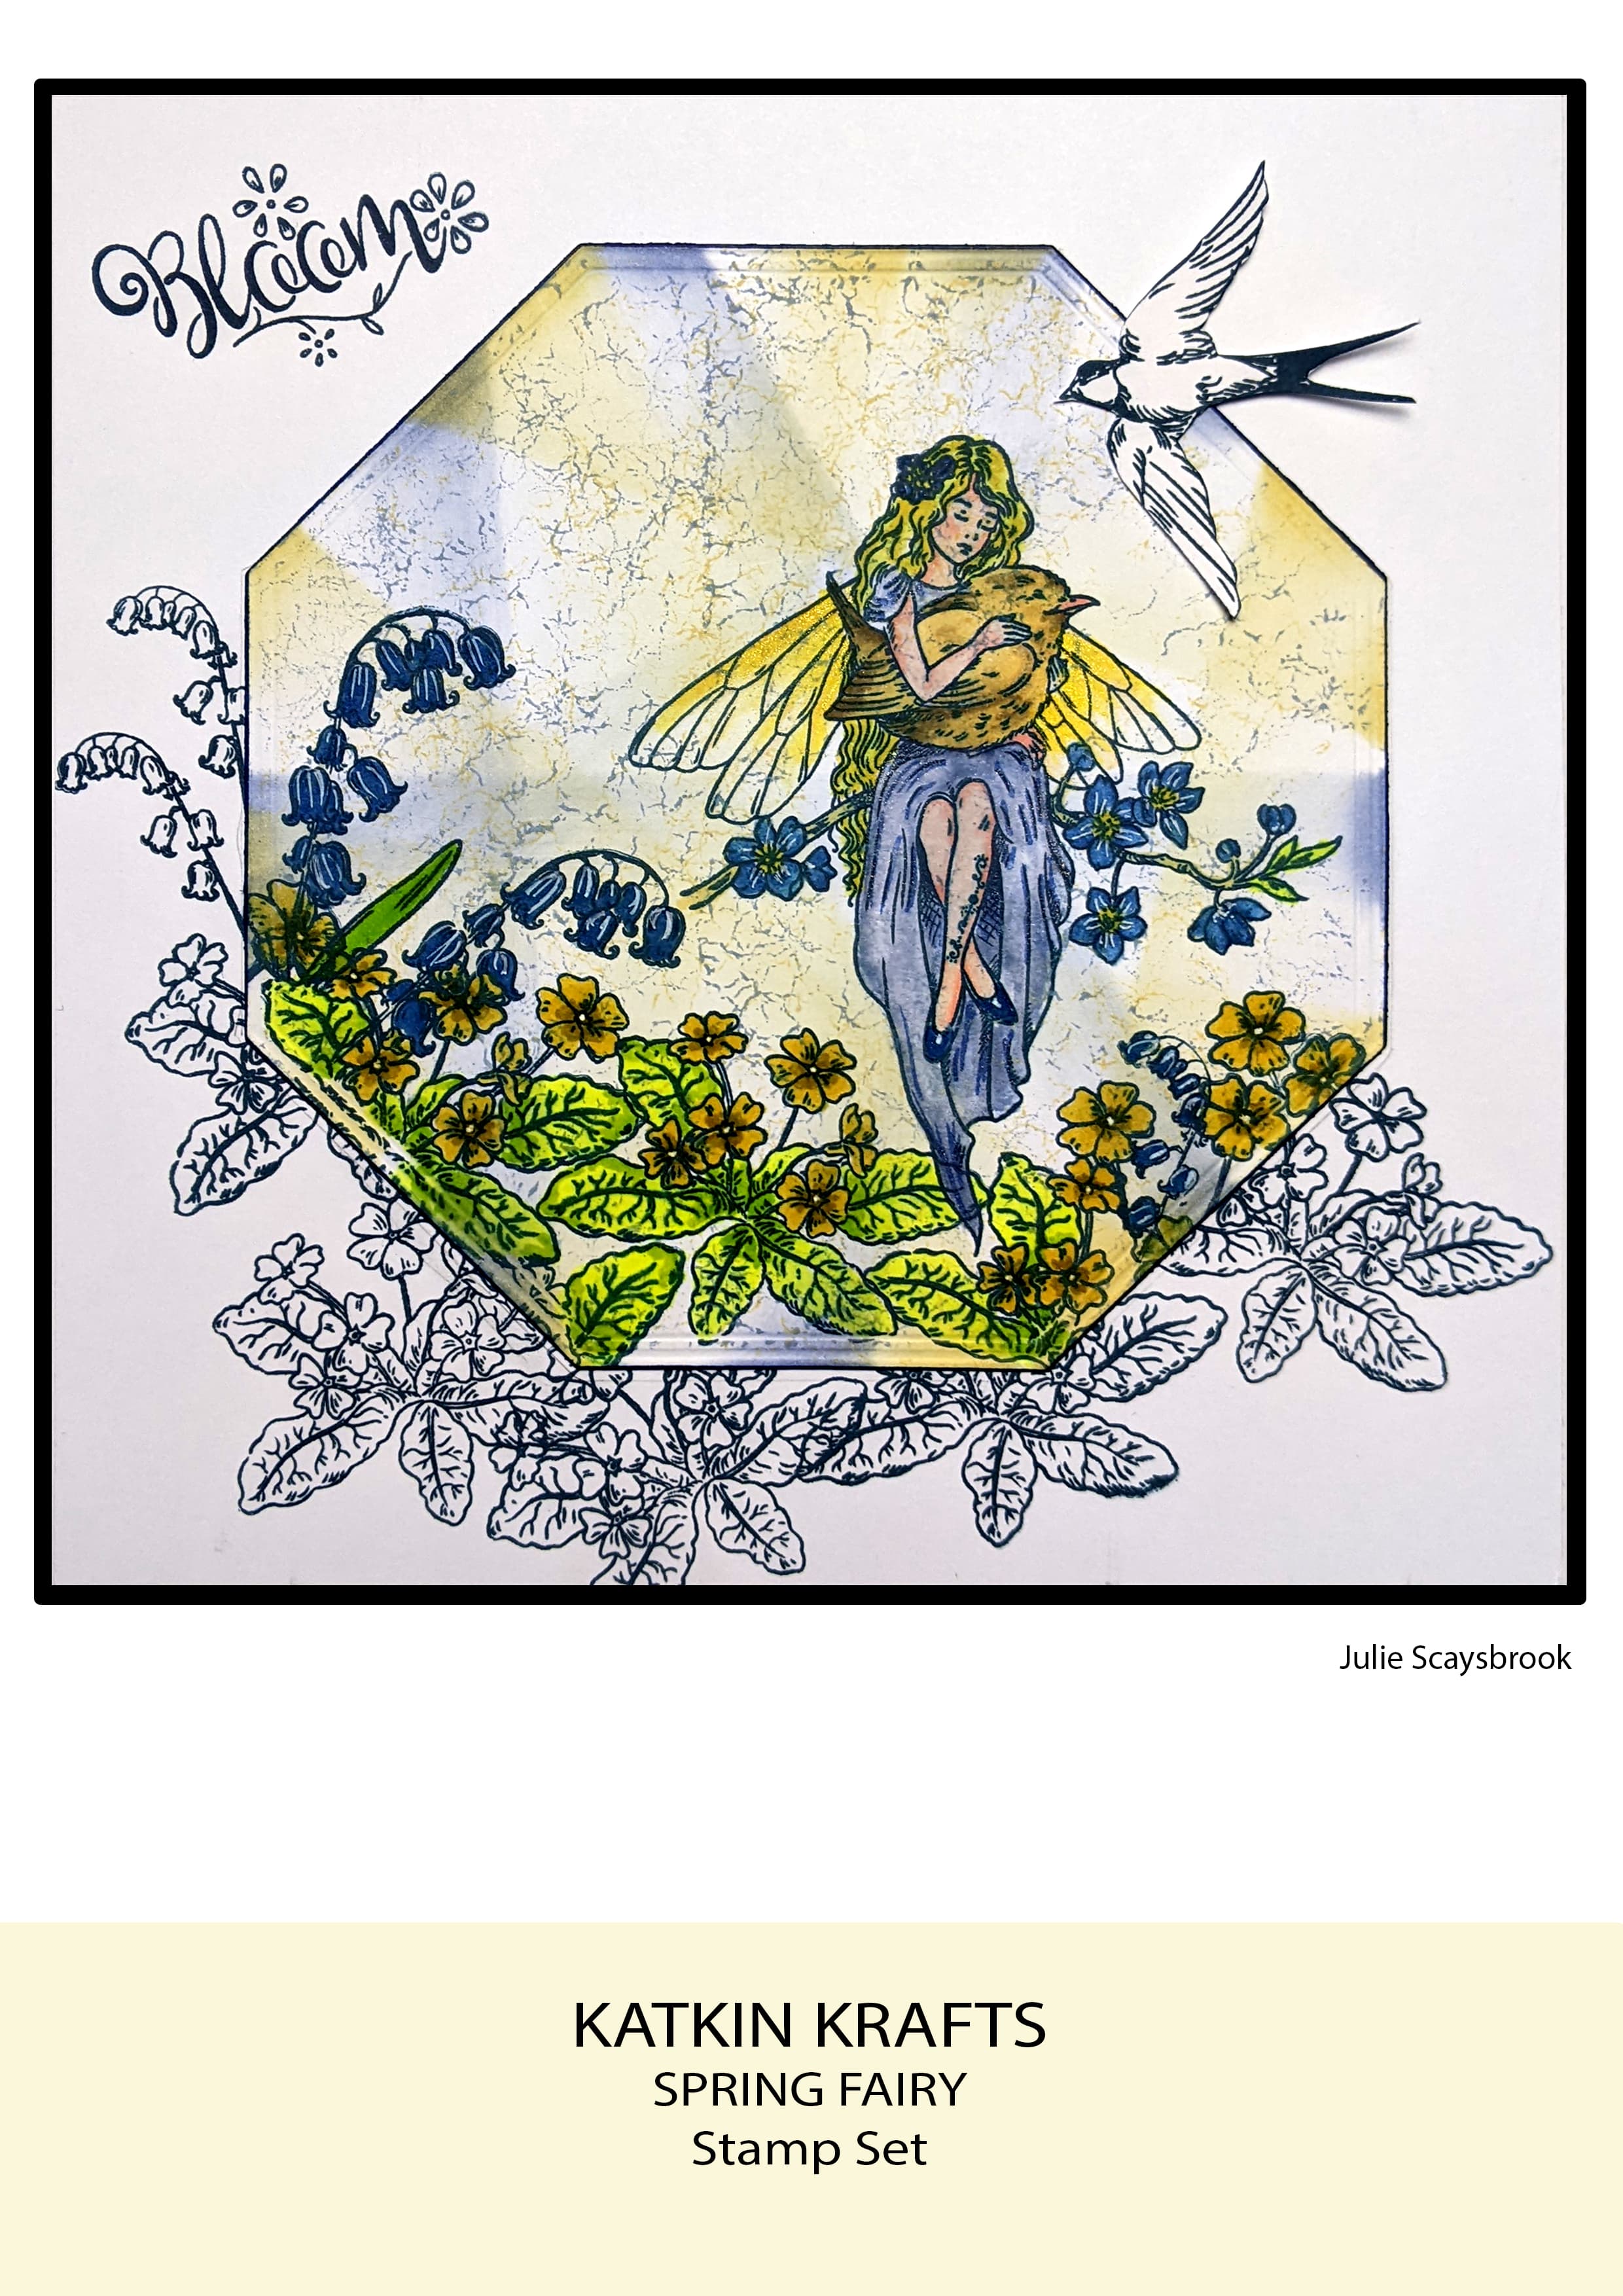 Katkin Krafts Spring Fairy 6 in x 8 in Clear Stamp Set